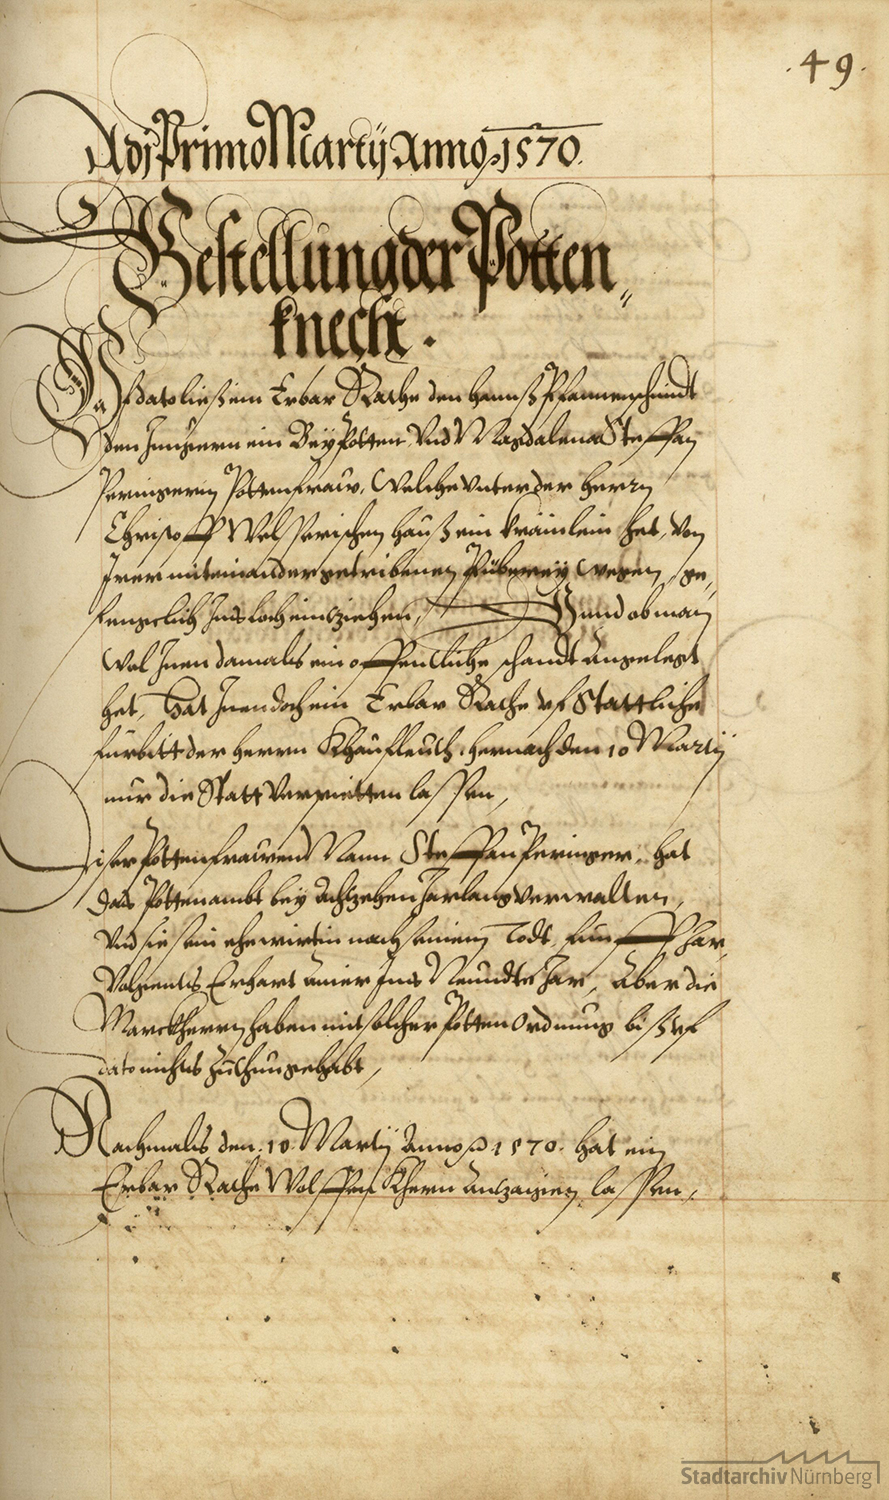 Ordnung vom 1. März 1570 über die Bestellung der Nürnberger Boten